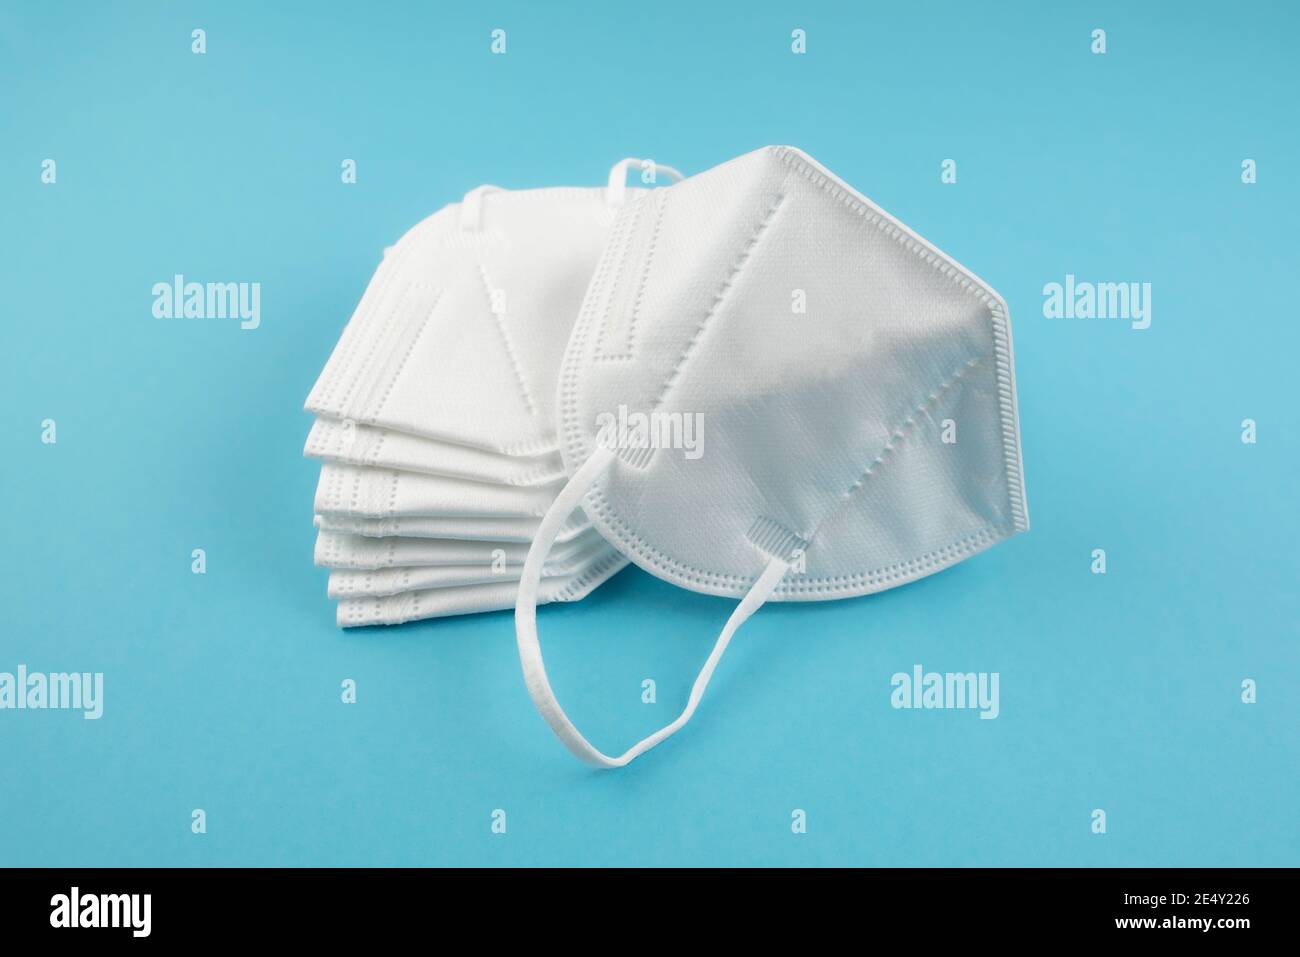 Stapel von FFP2 oder N95 Atemschutzmasken auf blau Hintergrund Stockfoto